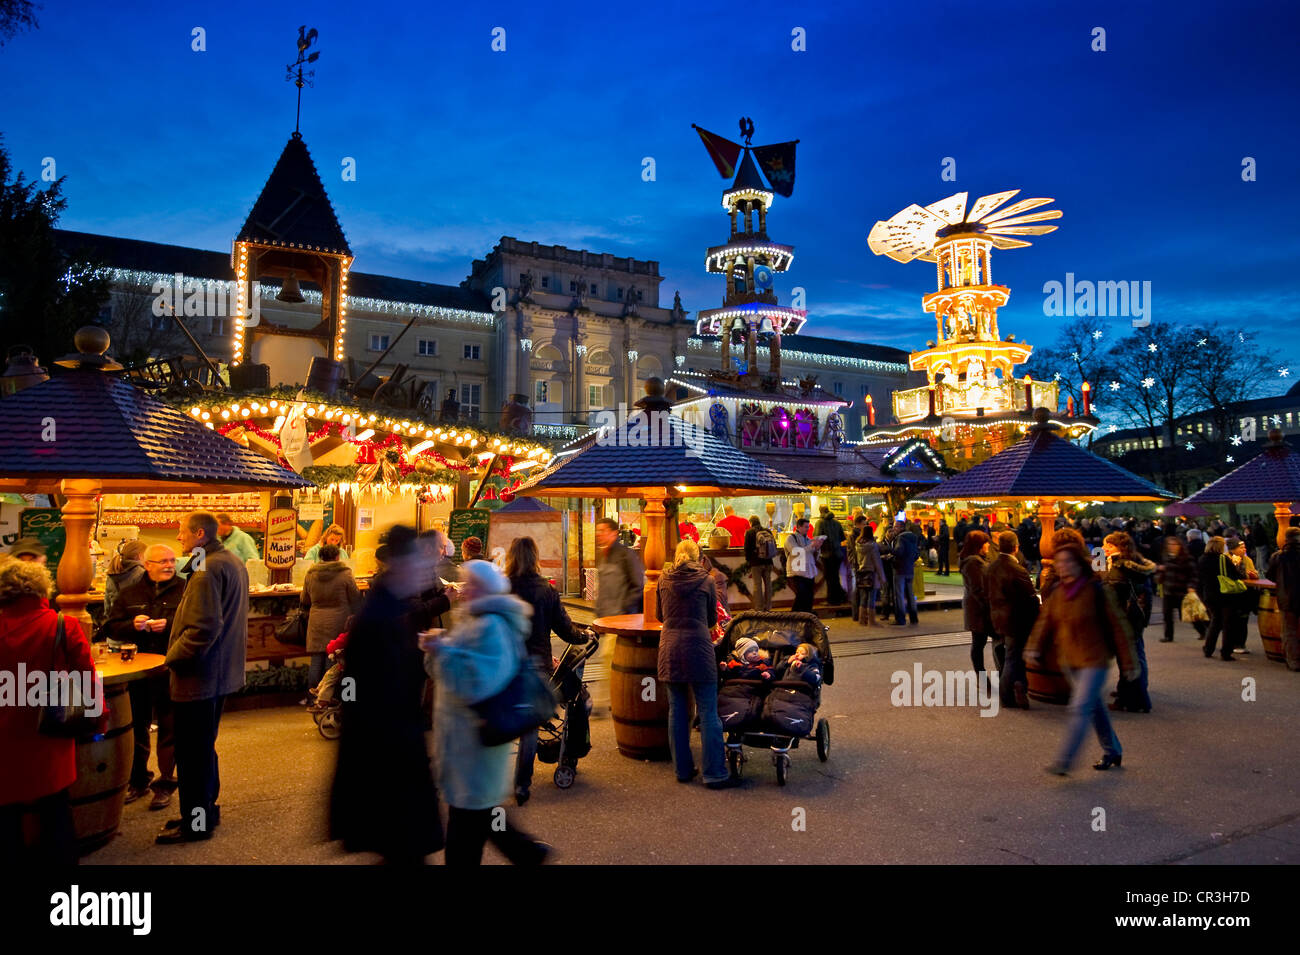 Weihnachten Markt, Karlsruhe, Baden-Württemberg, Deutschland, Europa Stockfoto